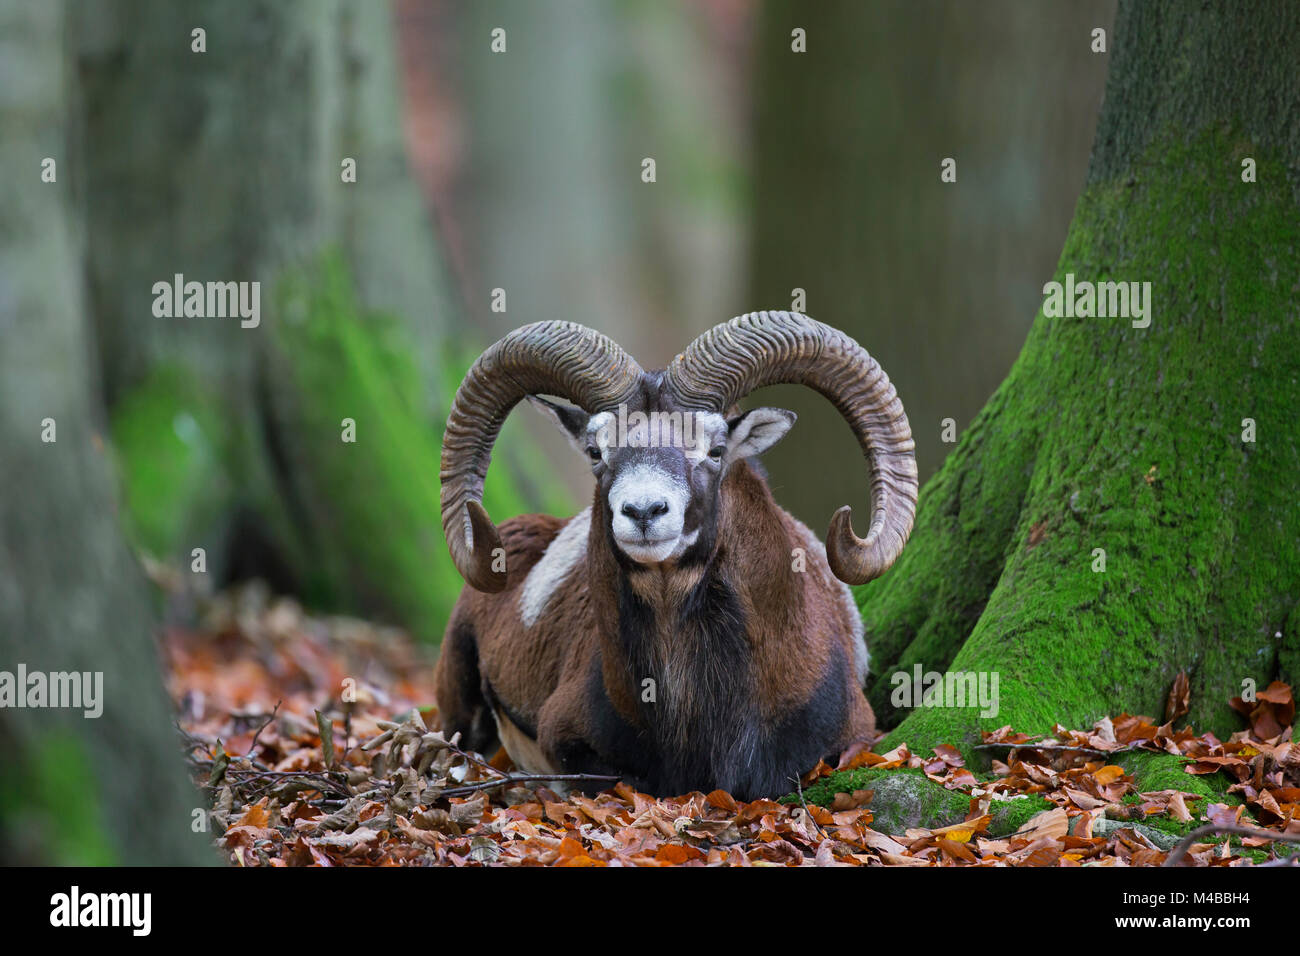 Mouflon (Ovis gmelini européenne / Ovis ammon musimon / Ovis orientalis musimon) ram avec grandes cornes reposant en forêt en automne Banque D'Images